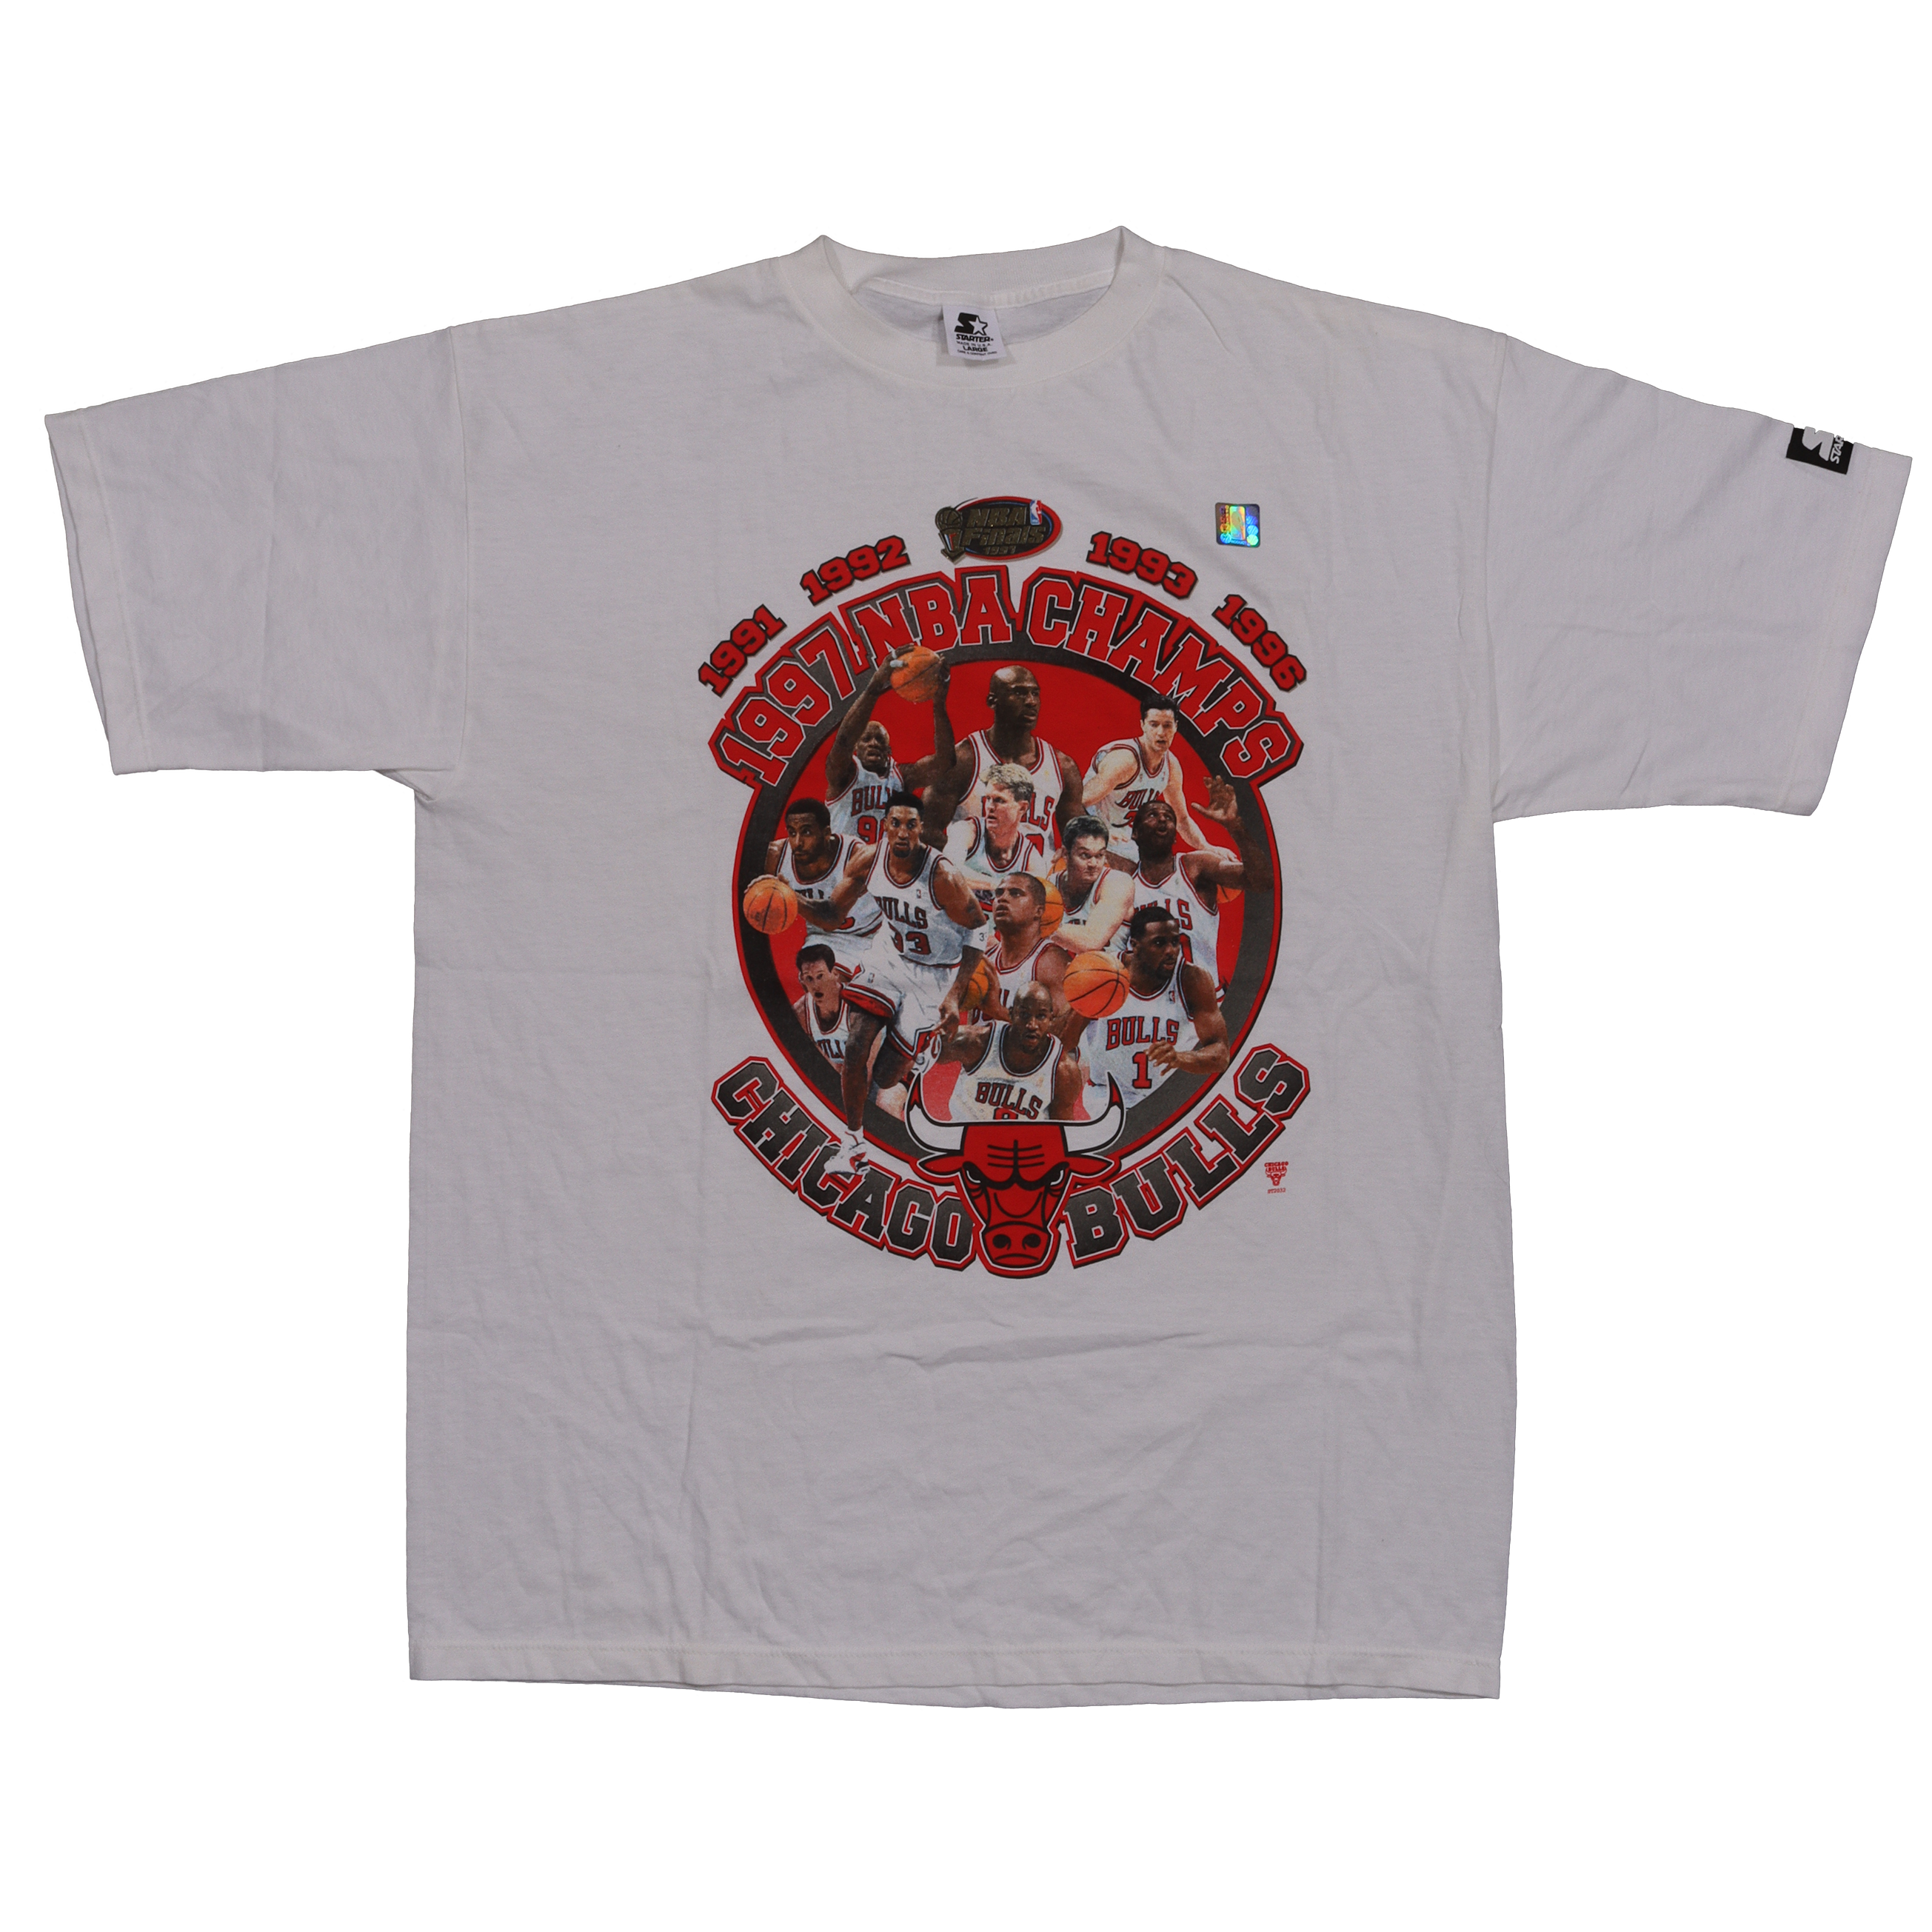 psamaan2@outlook.com 1997 Chicago Bulls 'NBA Champs' Logo T-Shirt XL